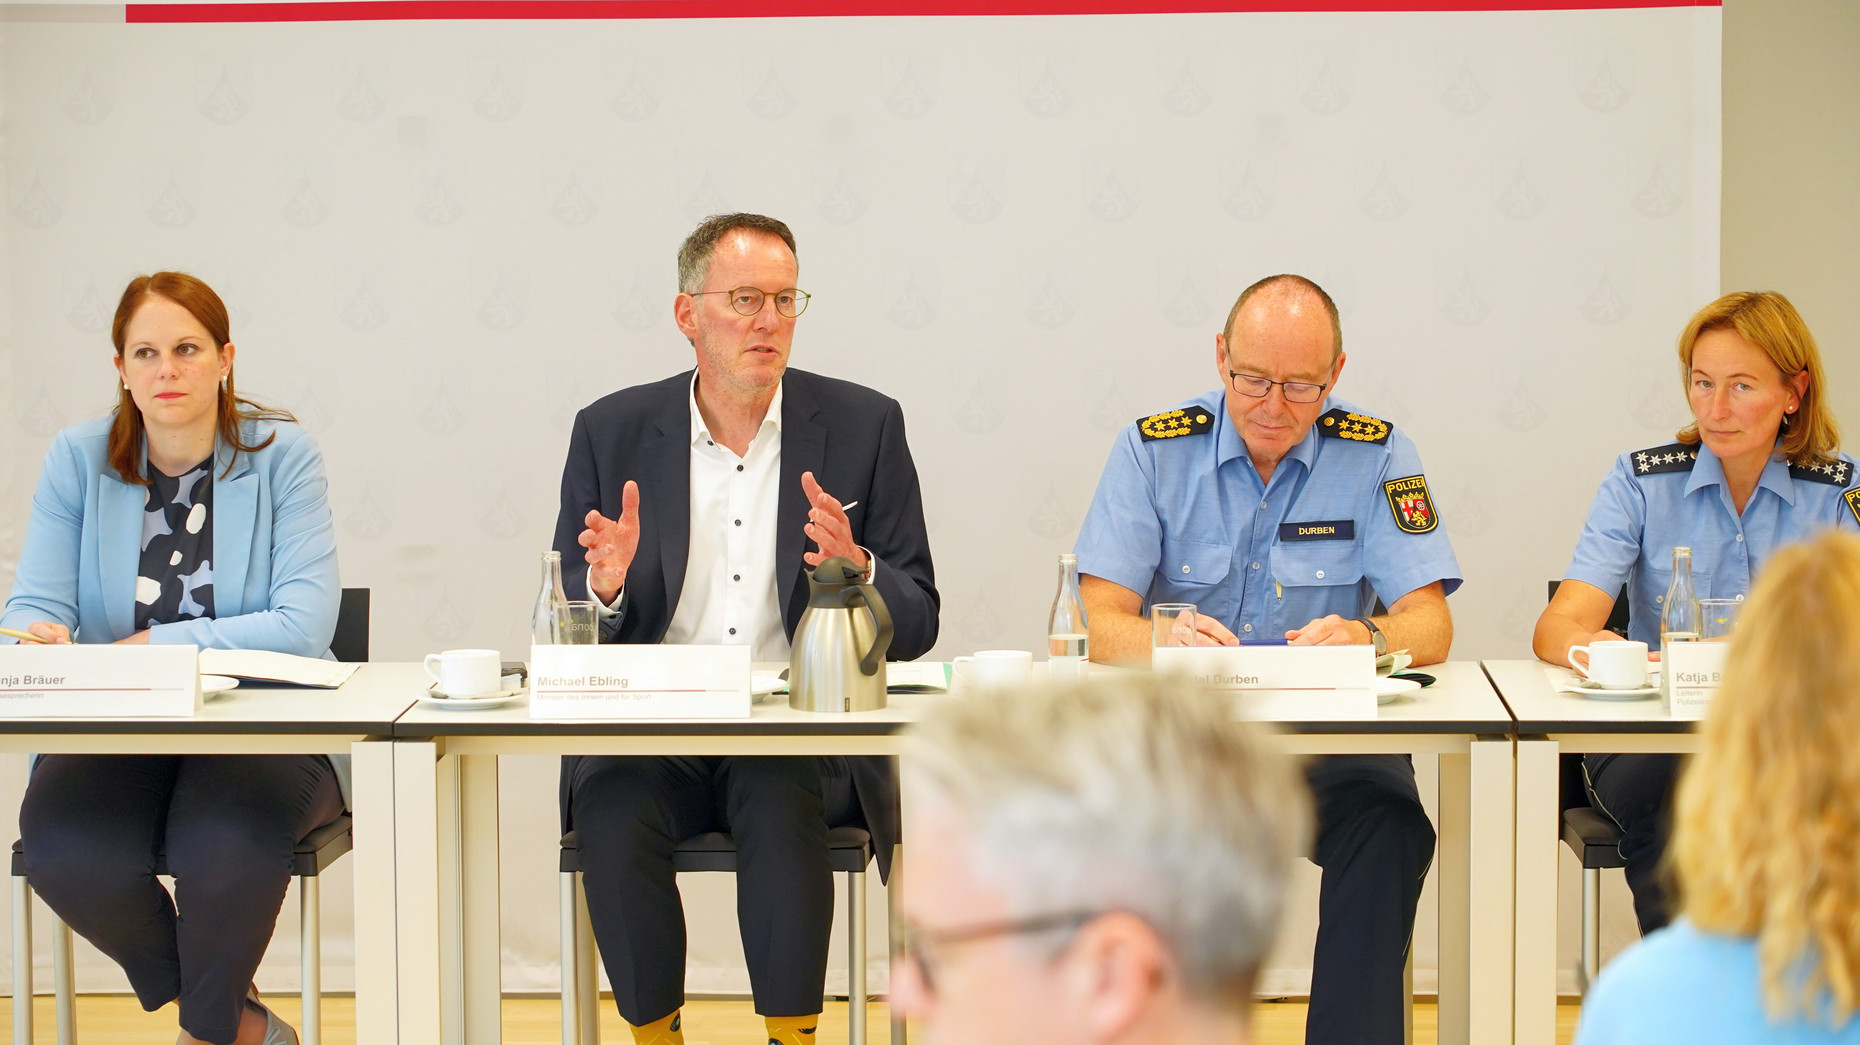 Innenminister Michael Ebling stellt gemeinsam mit dem Inspekteur der Polizei Rheinland-Pfalz, Friedel Durben, die Polizeiarbeit zur Fußball-Europameisterschaft vor. 